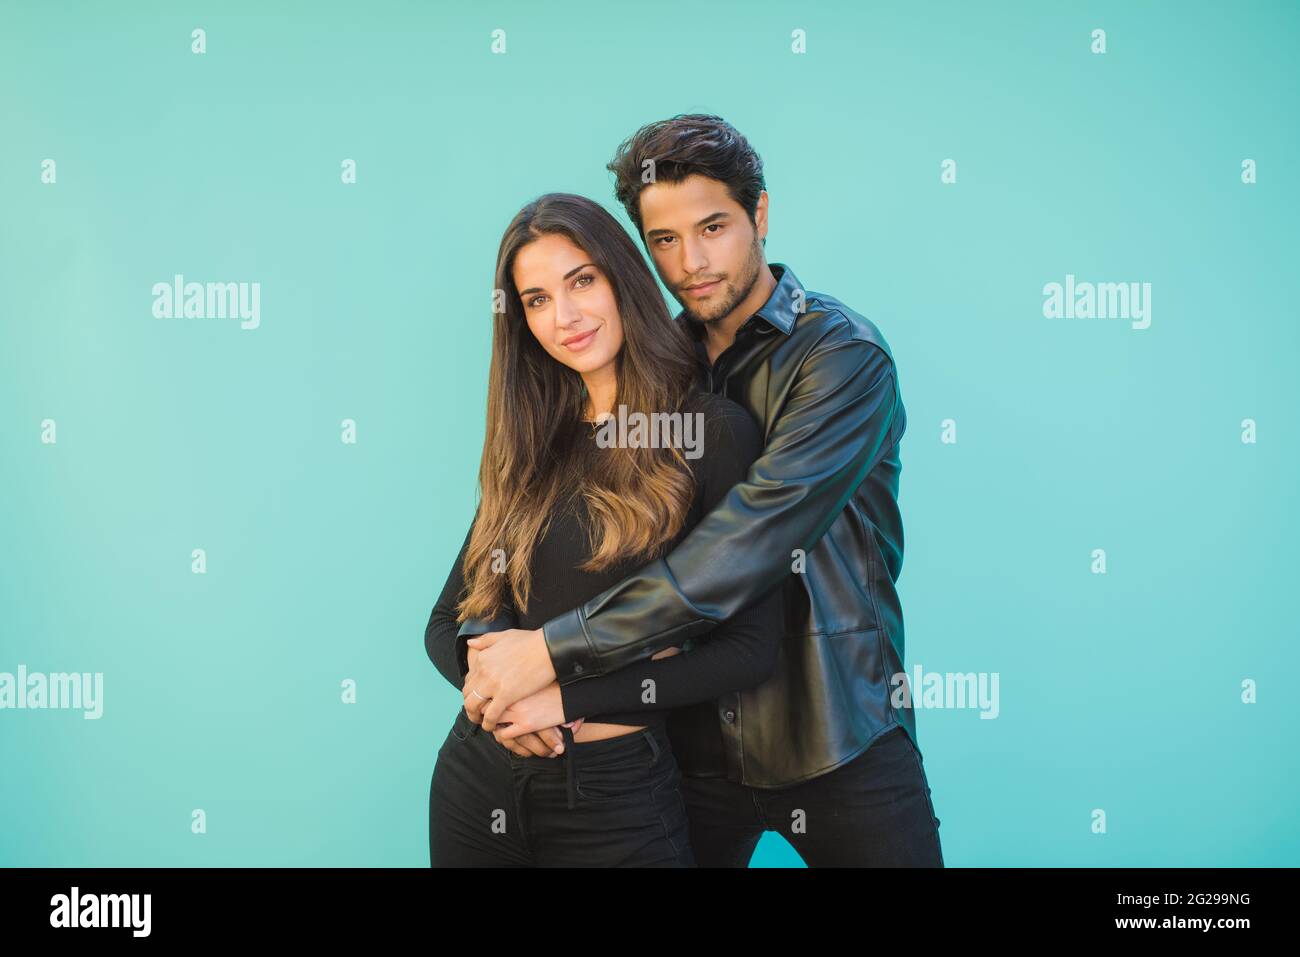 Smiling young couple embracing on aquamarine background Stock Photo